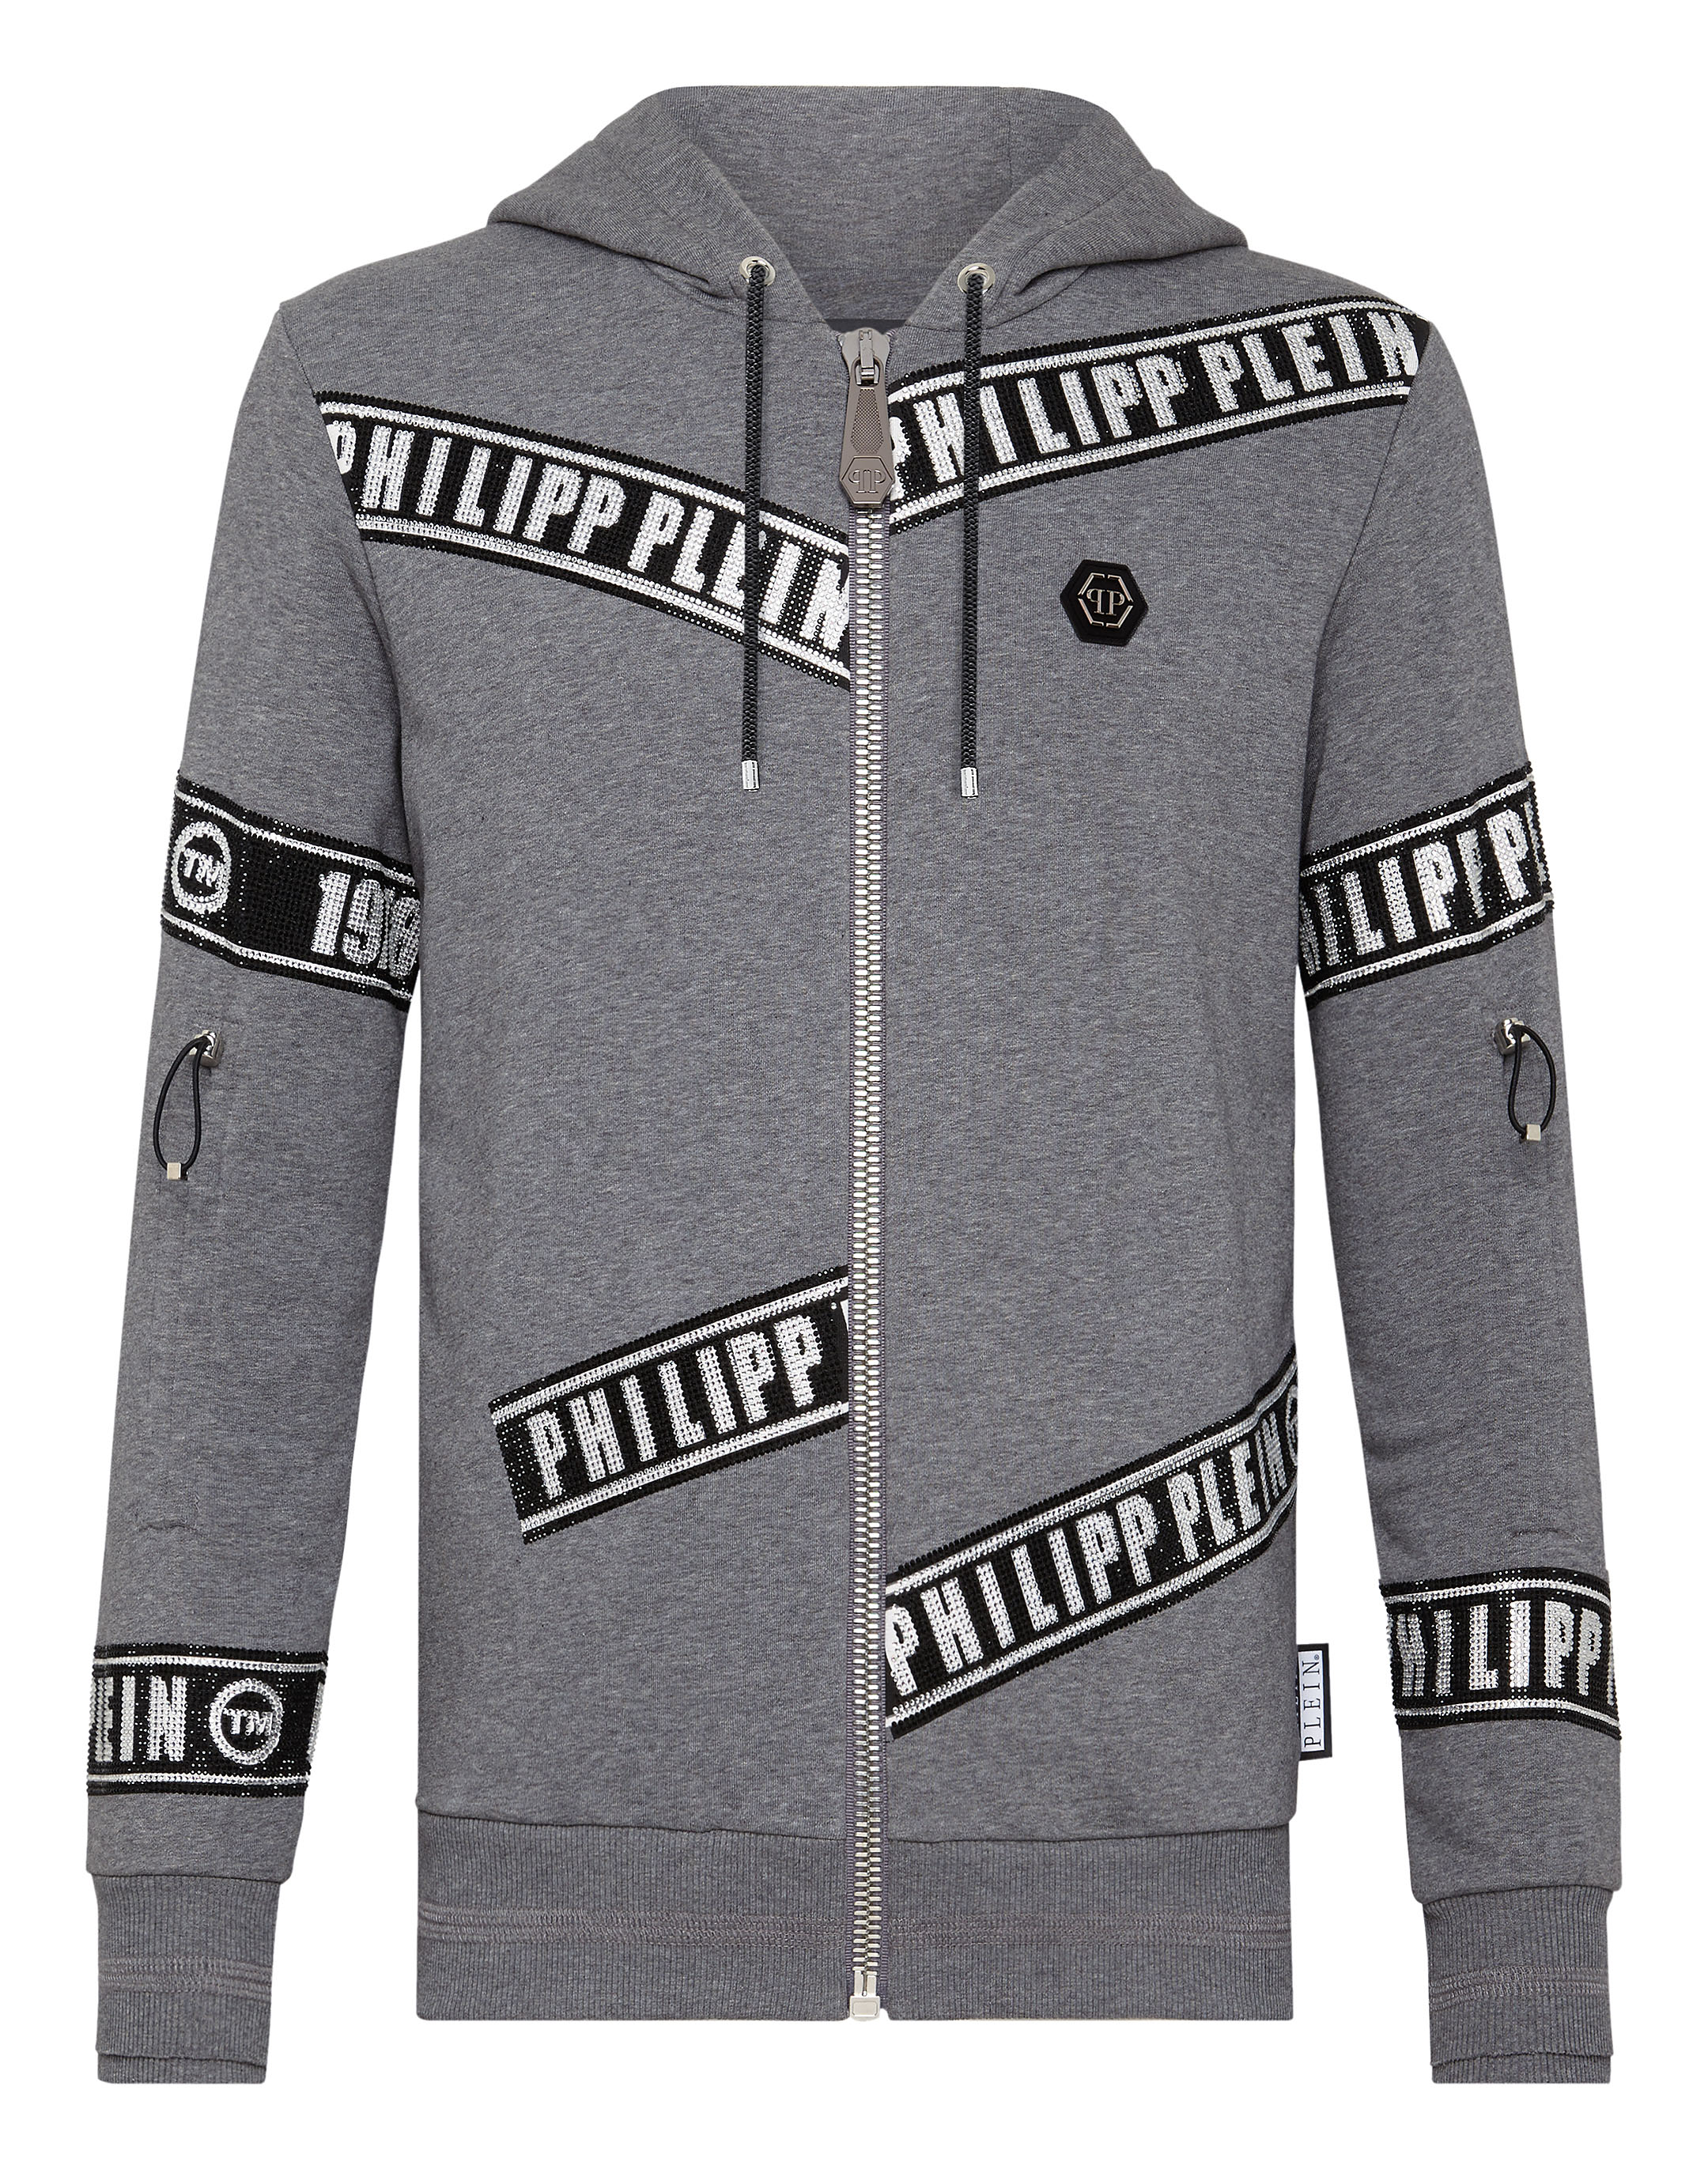 philipp plein sweat jacket